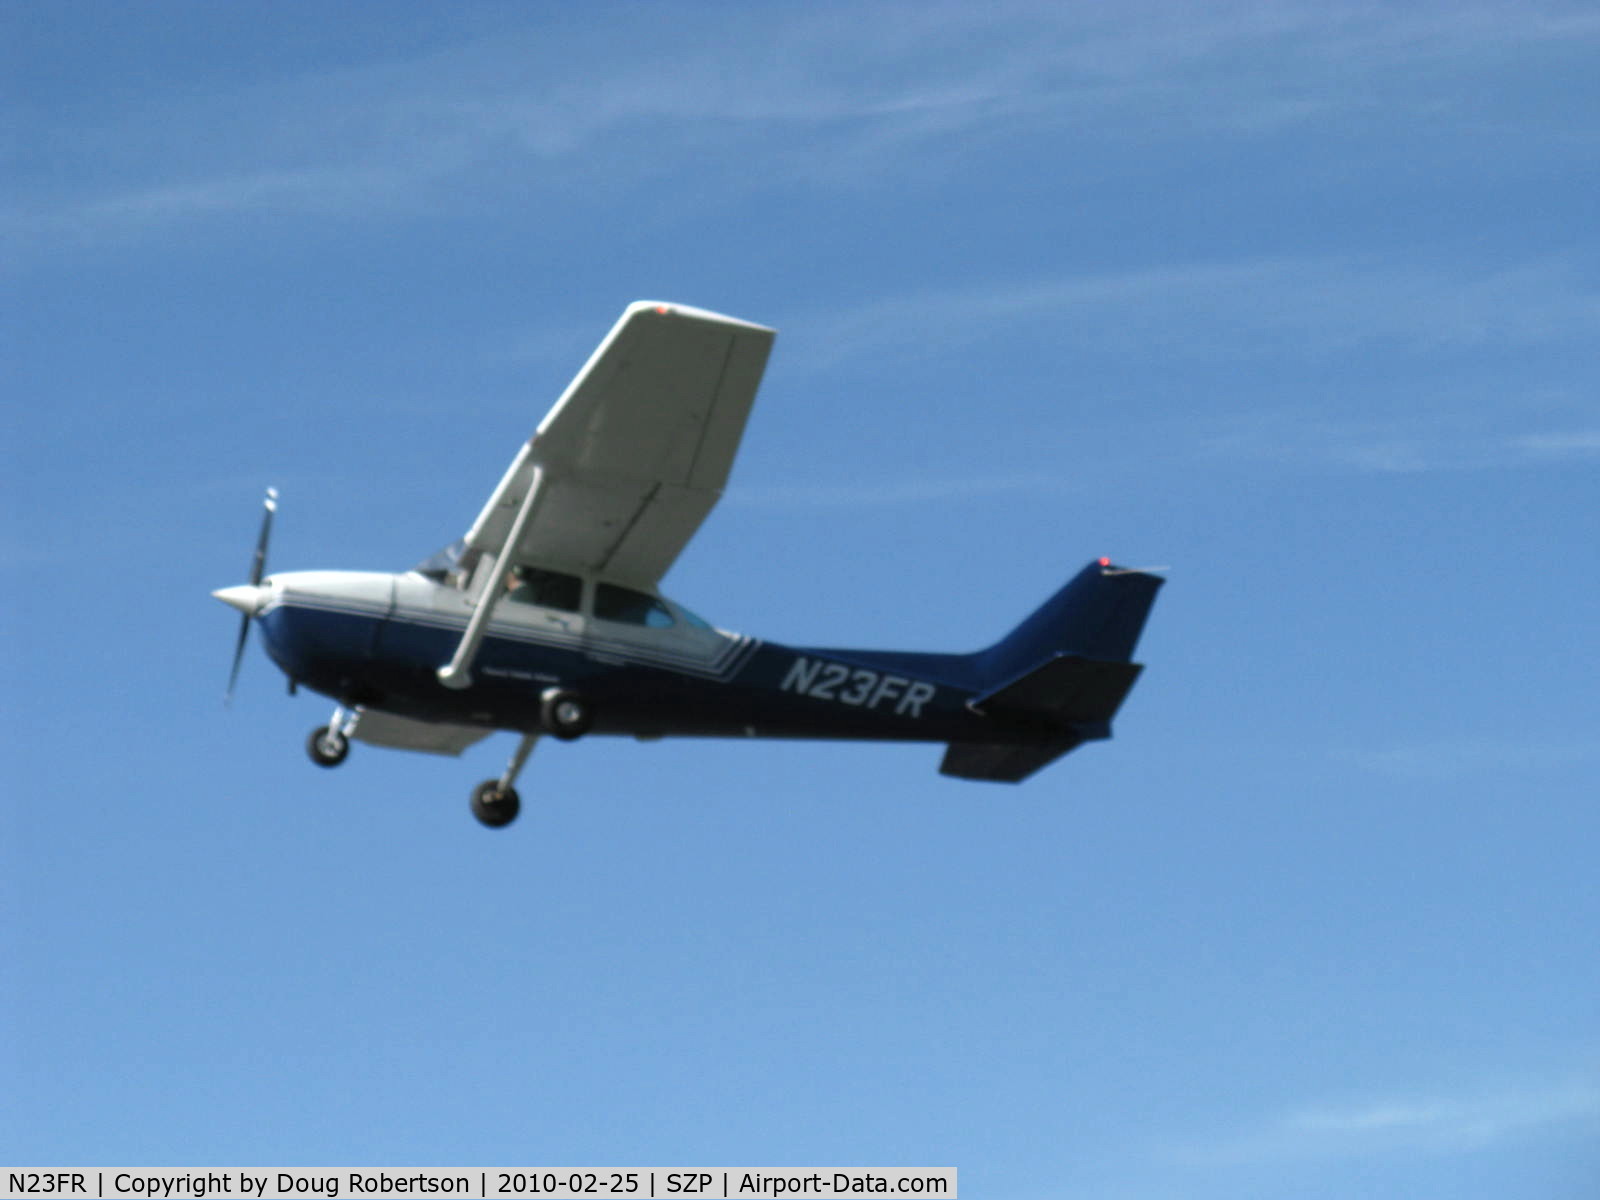 N23FR, 1982 Cessna 172P C/N 17275772, 1982 Cessna 172P, Lycoming O-320-H2AD 160 Hp, takeoff climb Rwy 22